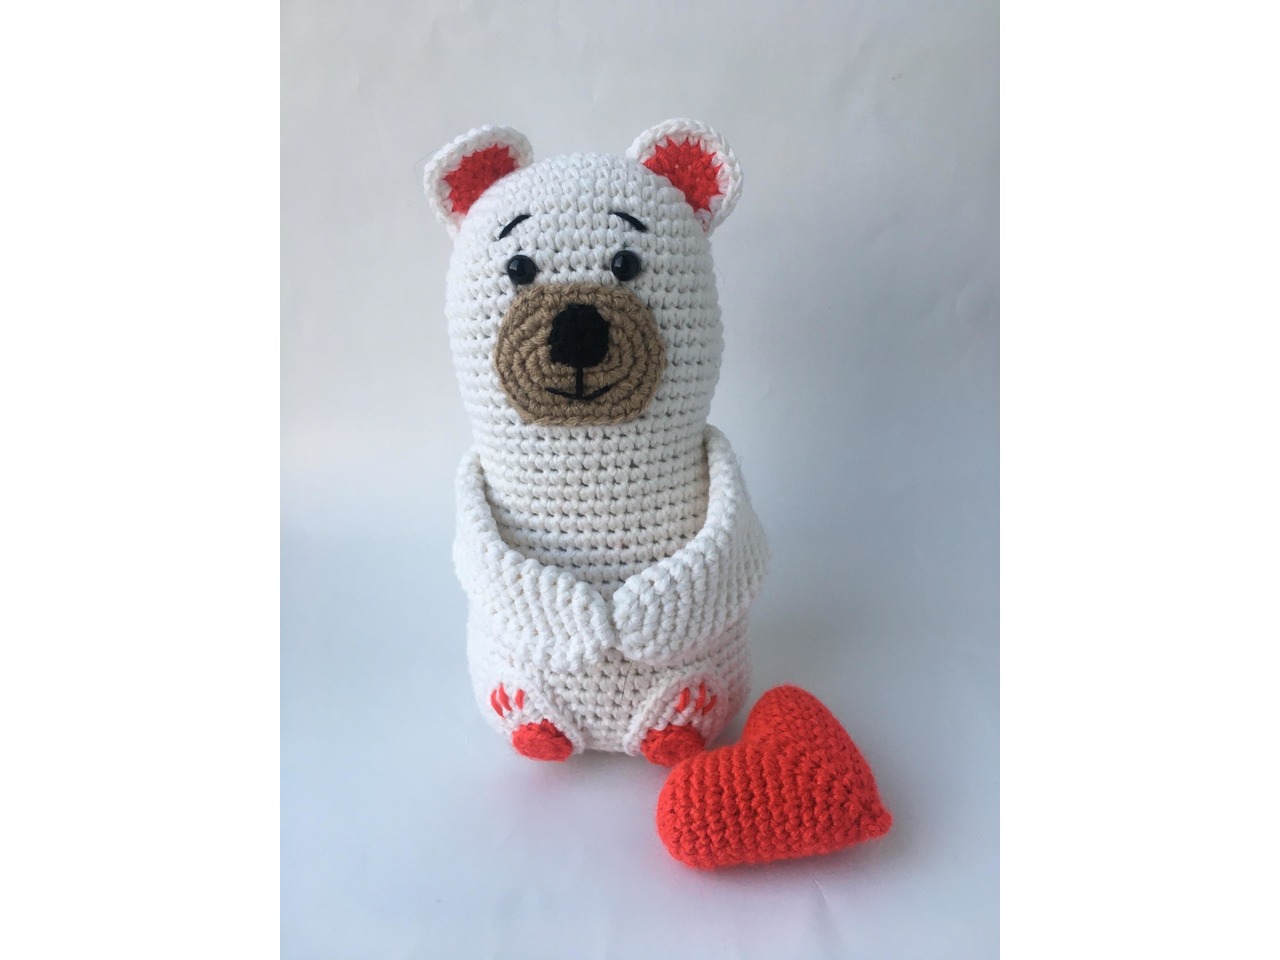 Crochet teddy bear in a dress with a bow